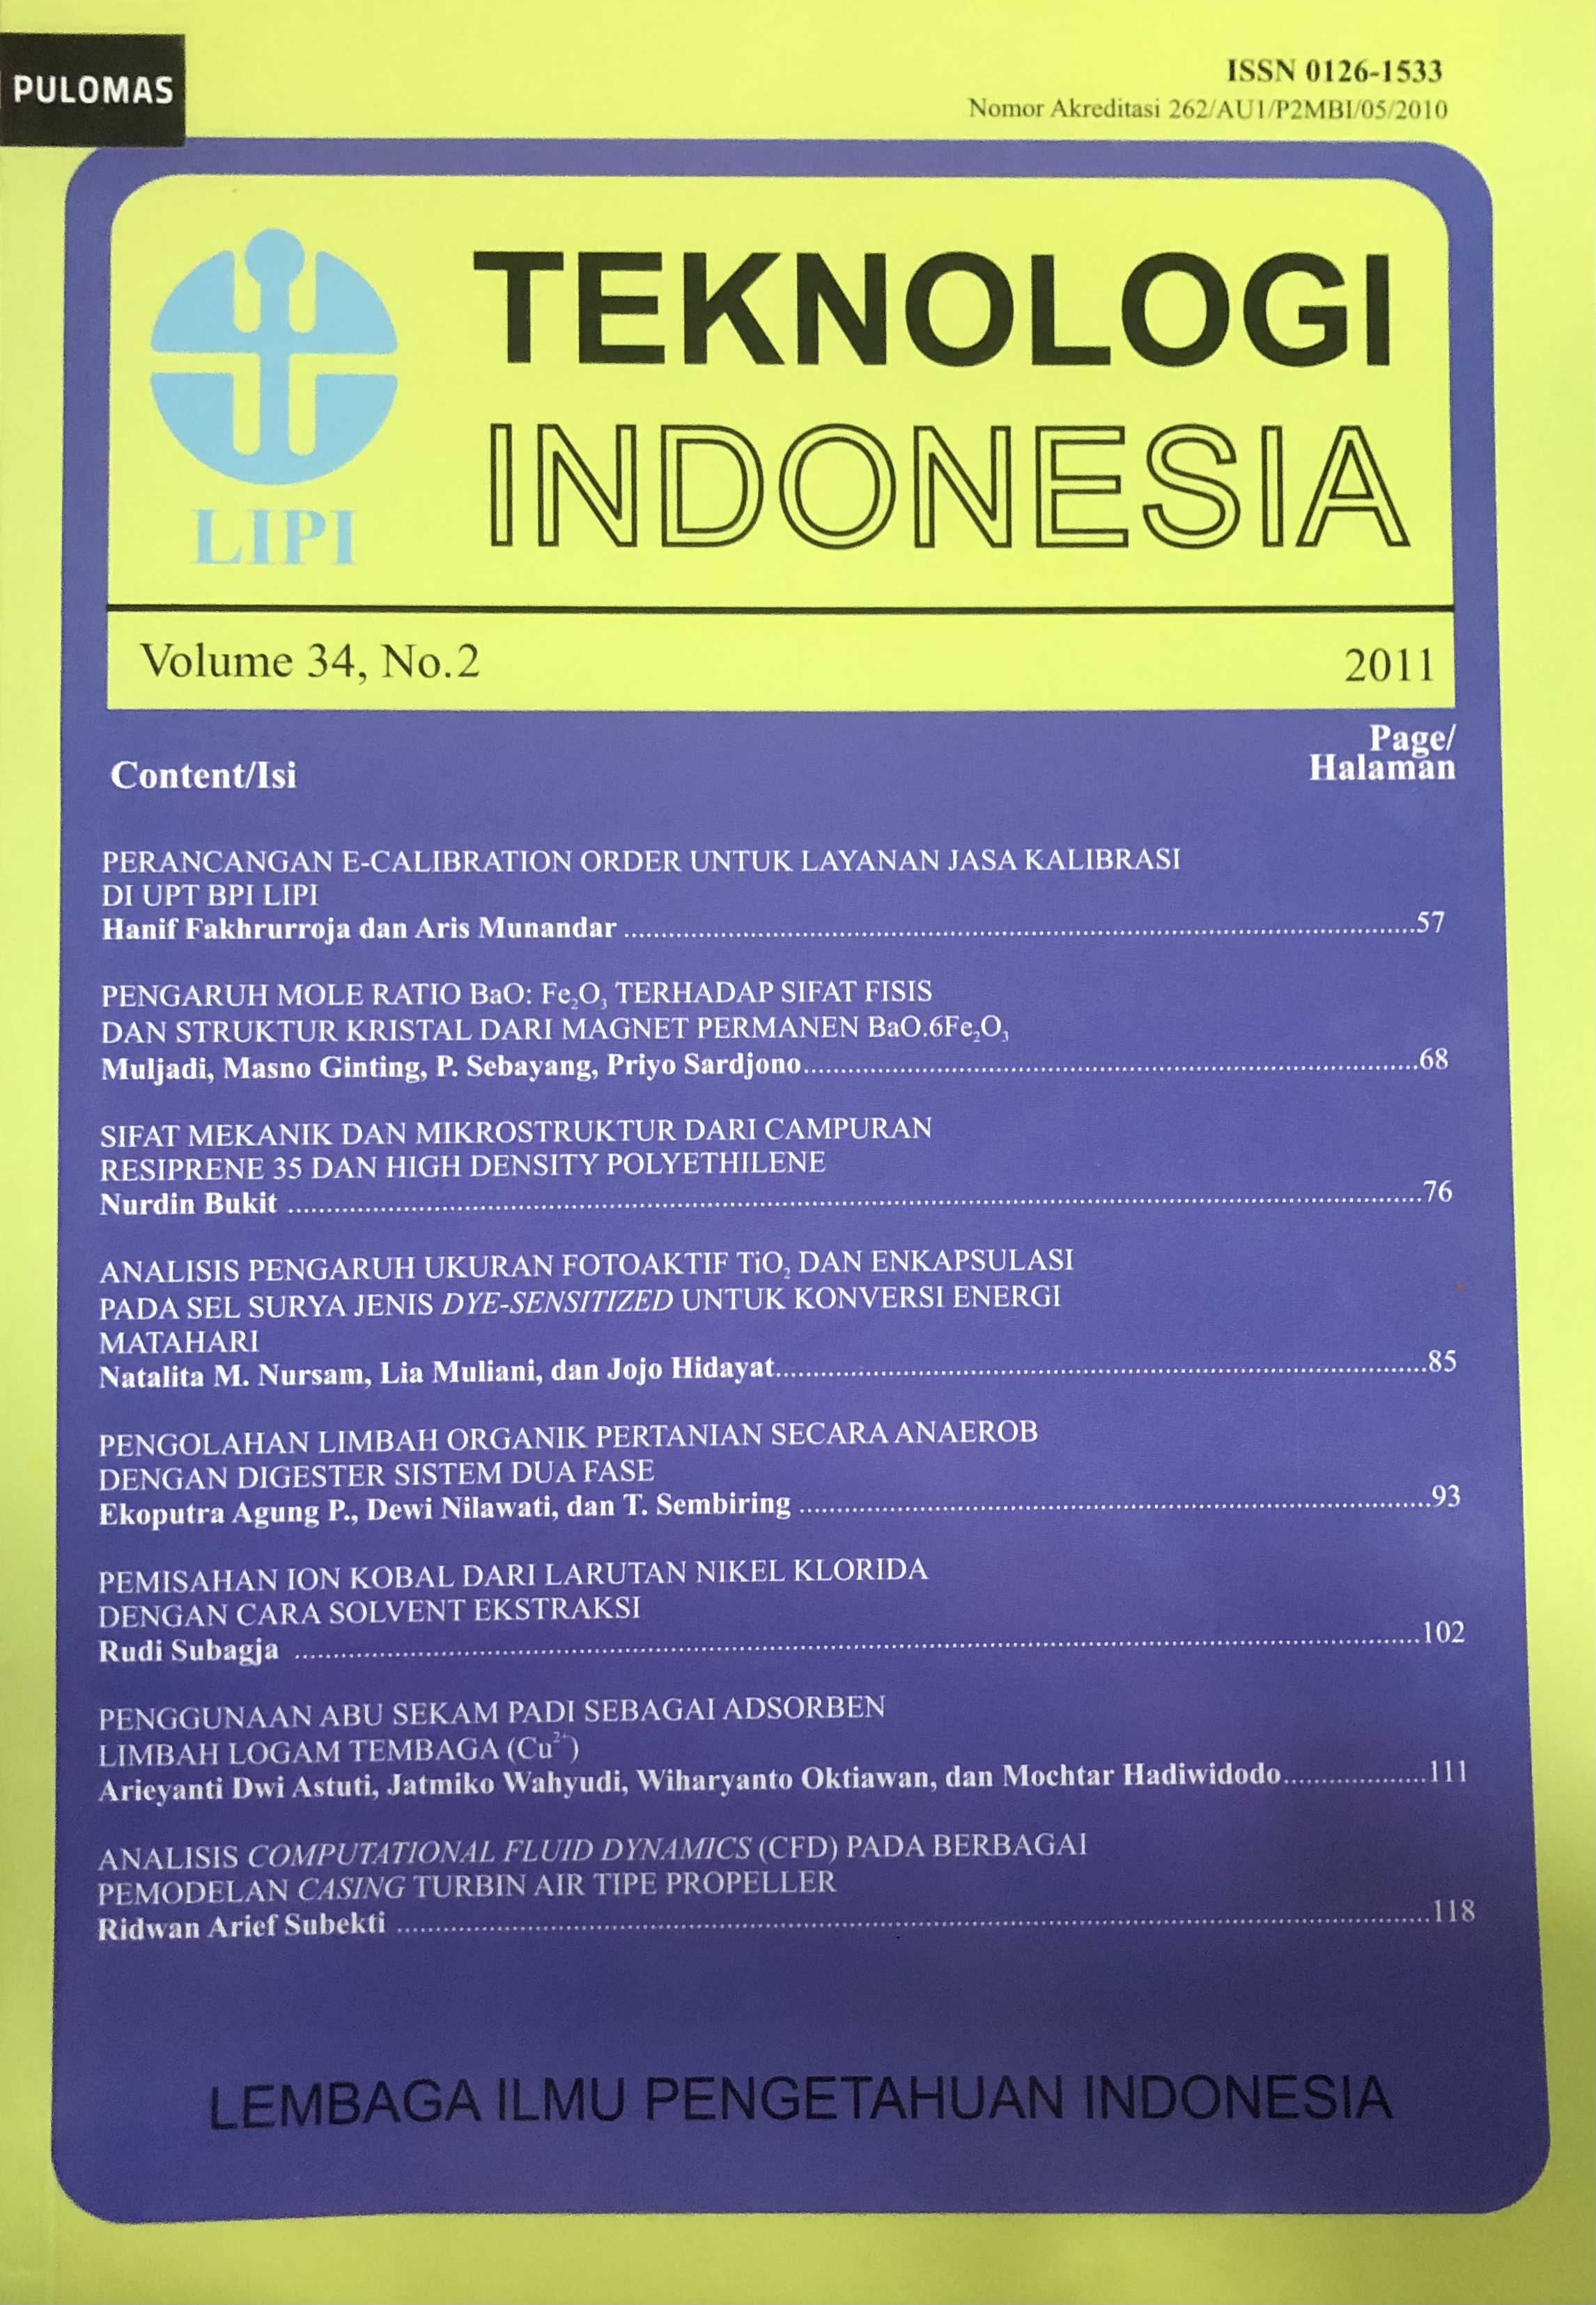 Teknologi Indonesia Vol.34 No.2